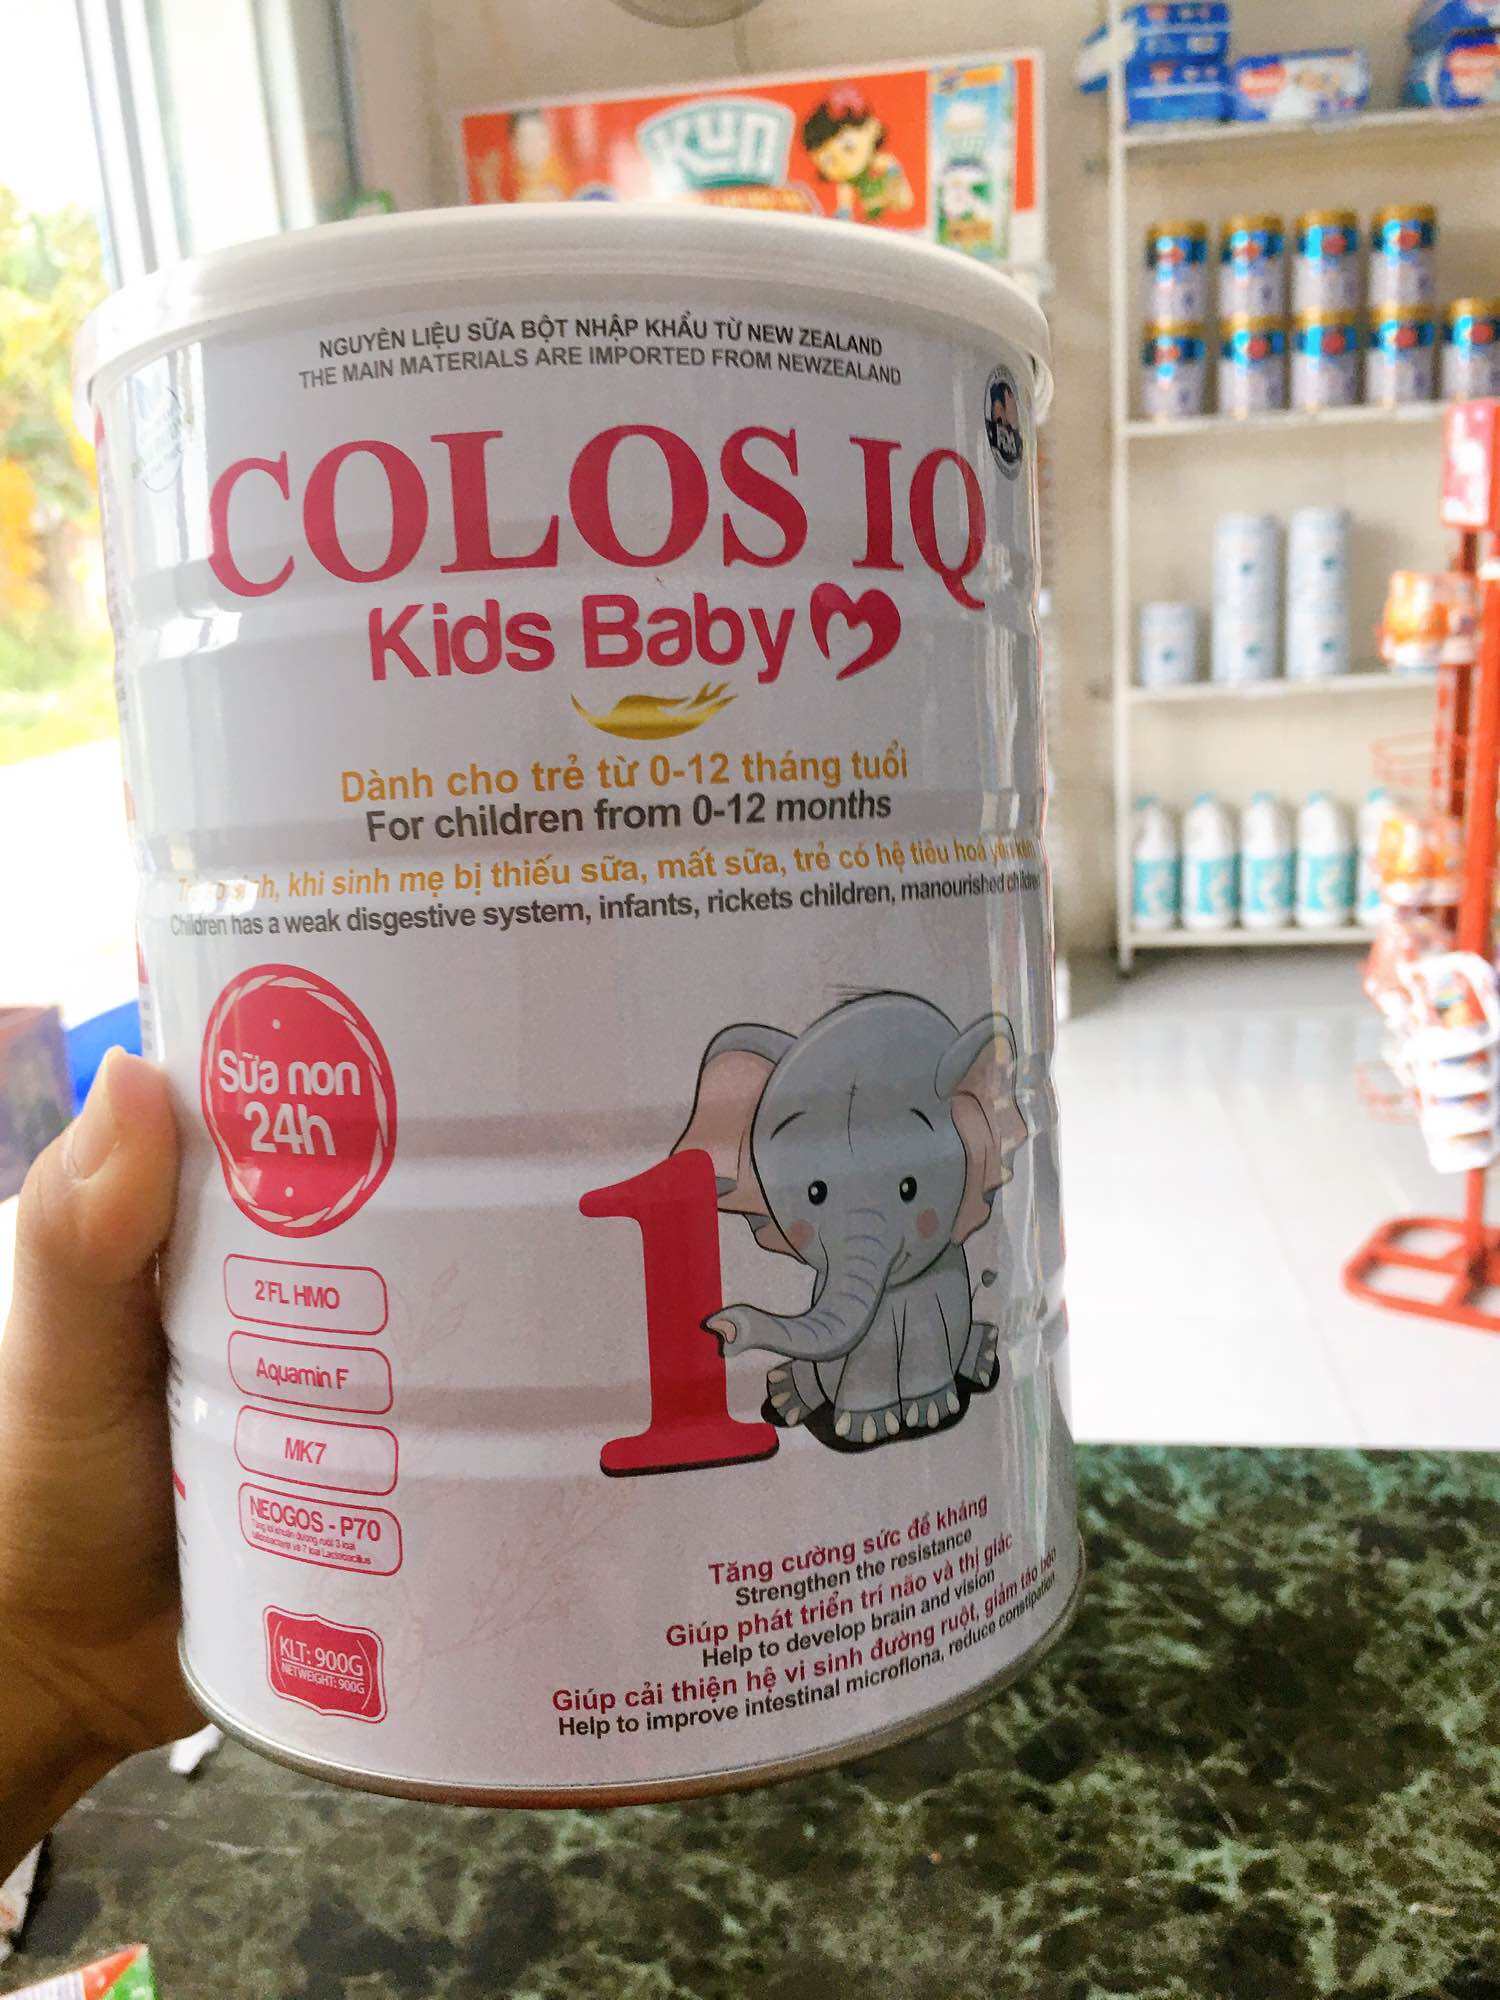 Sữa bột colos IQ dinh dưỡng cho trẻ từ 0-12 tháng tuổi